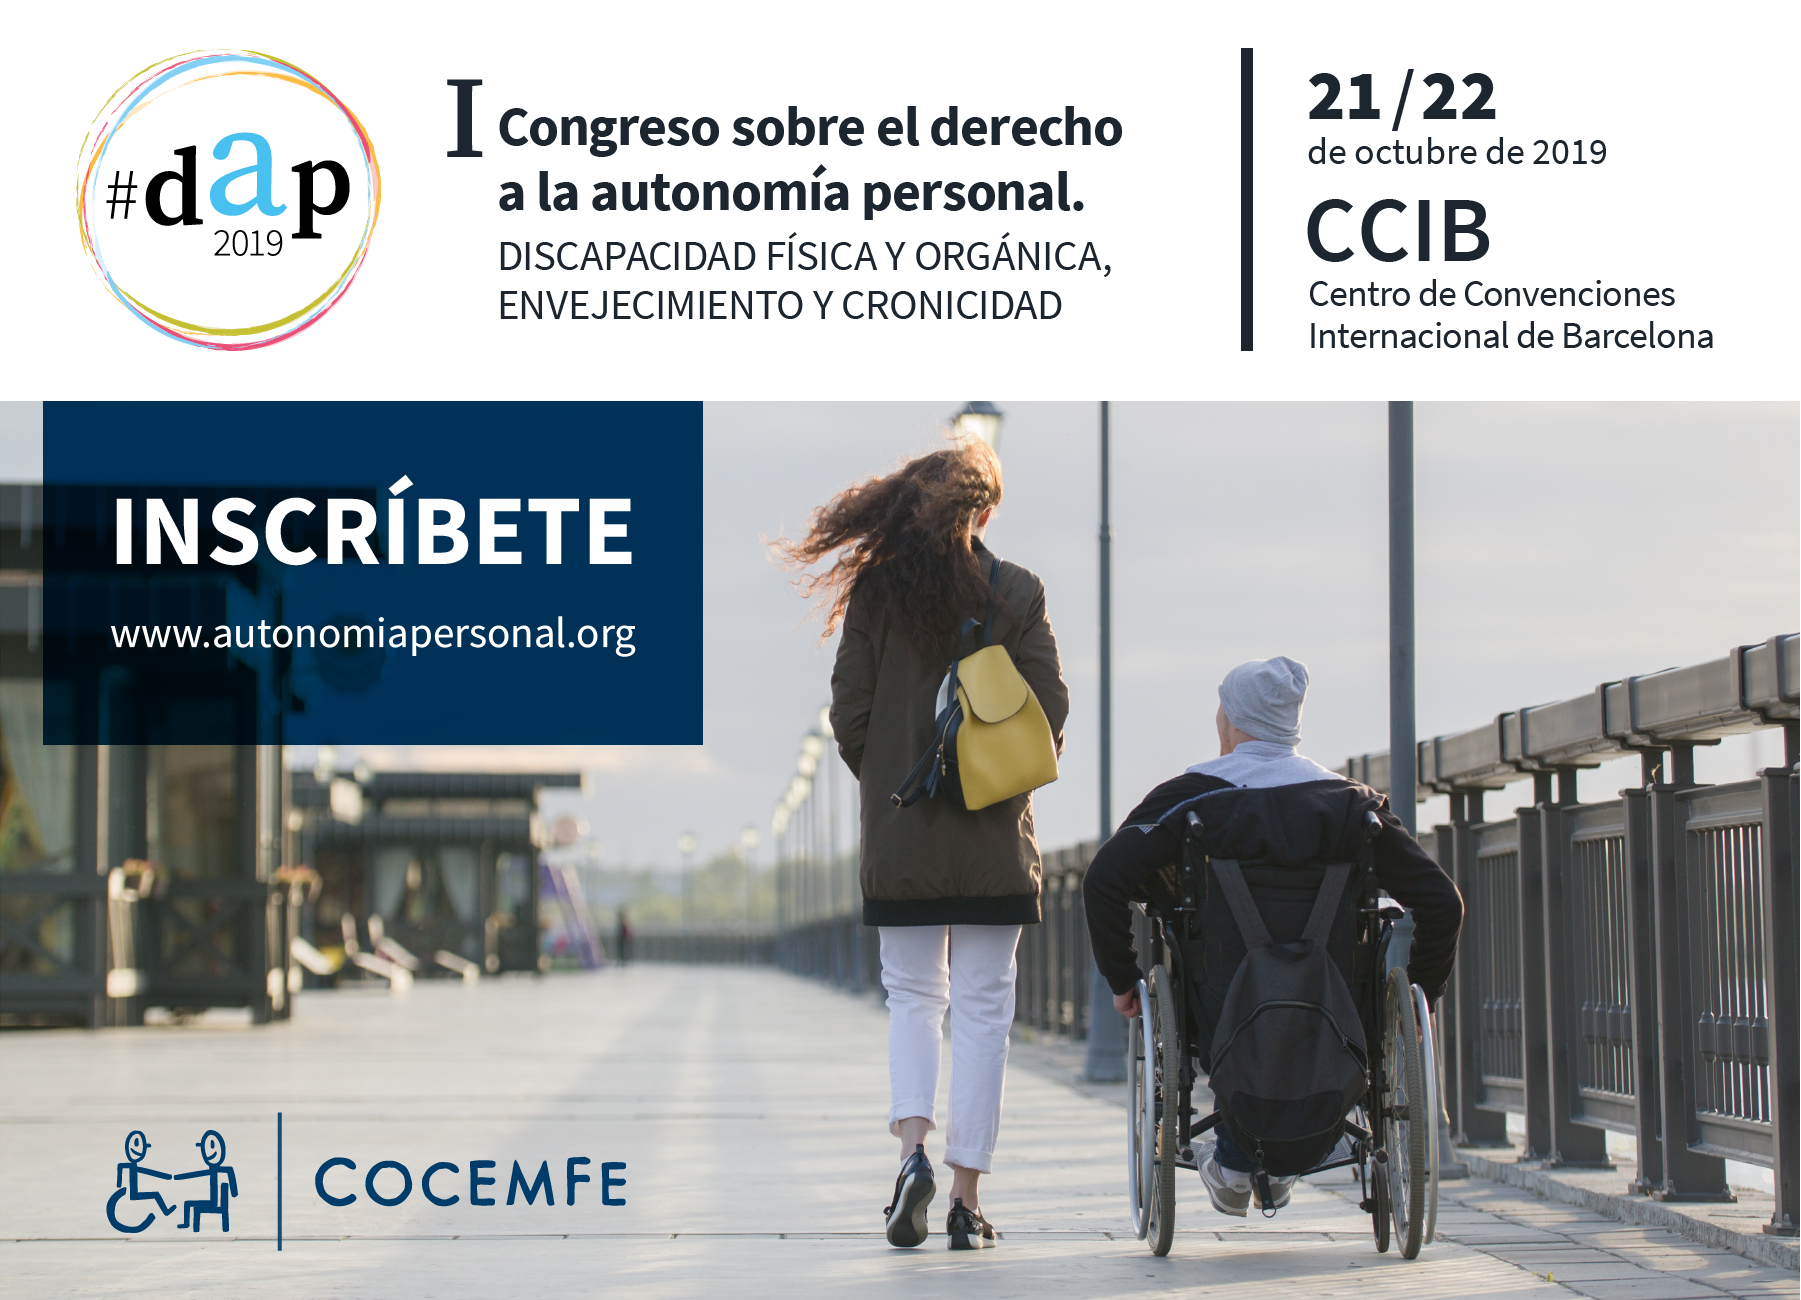 Registro per asistir al I Congreso sobre el derecho a la autonomía personal promovido por COCEMFE